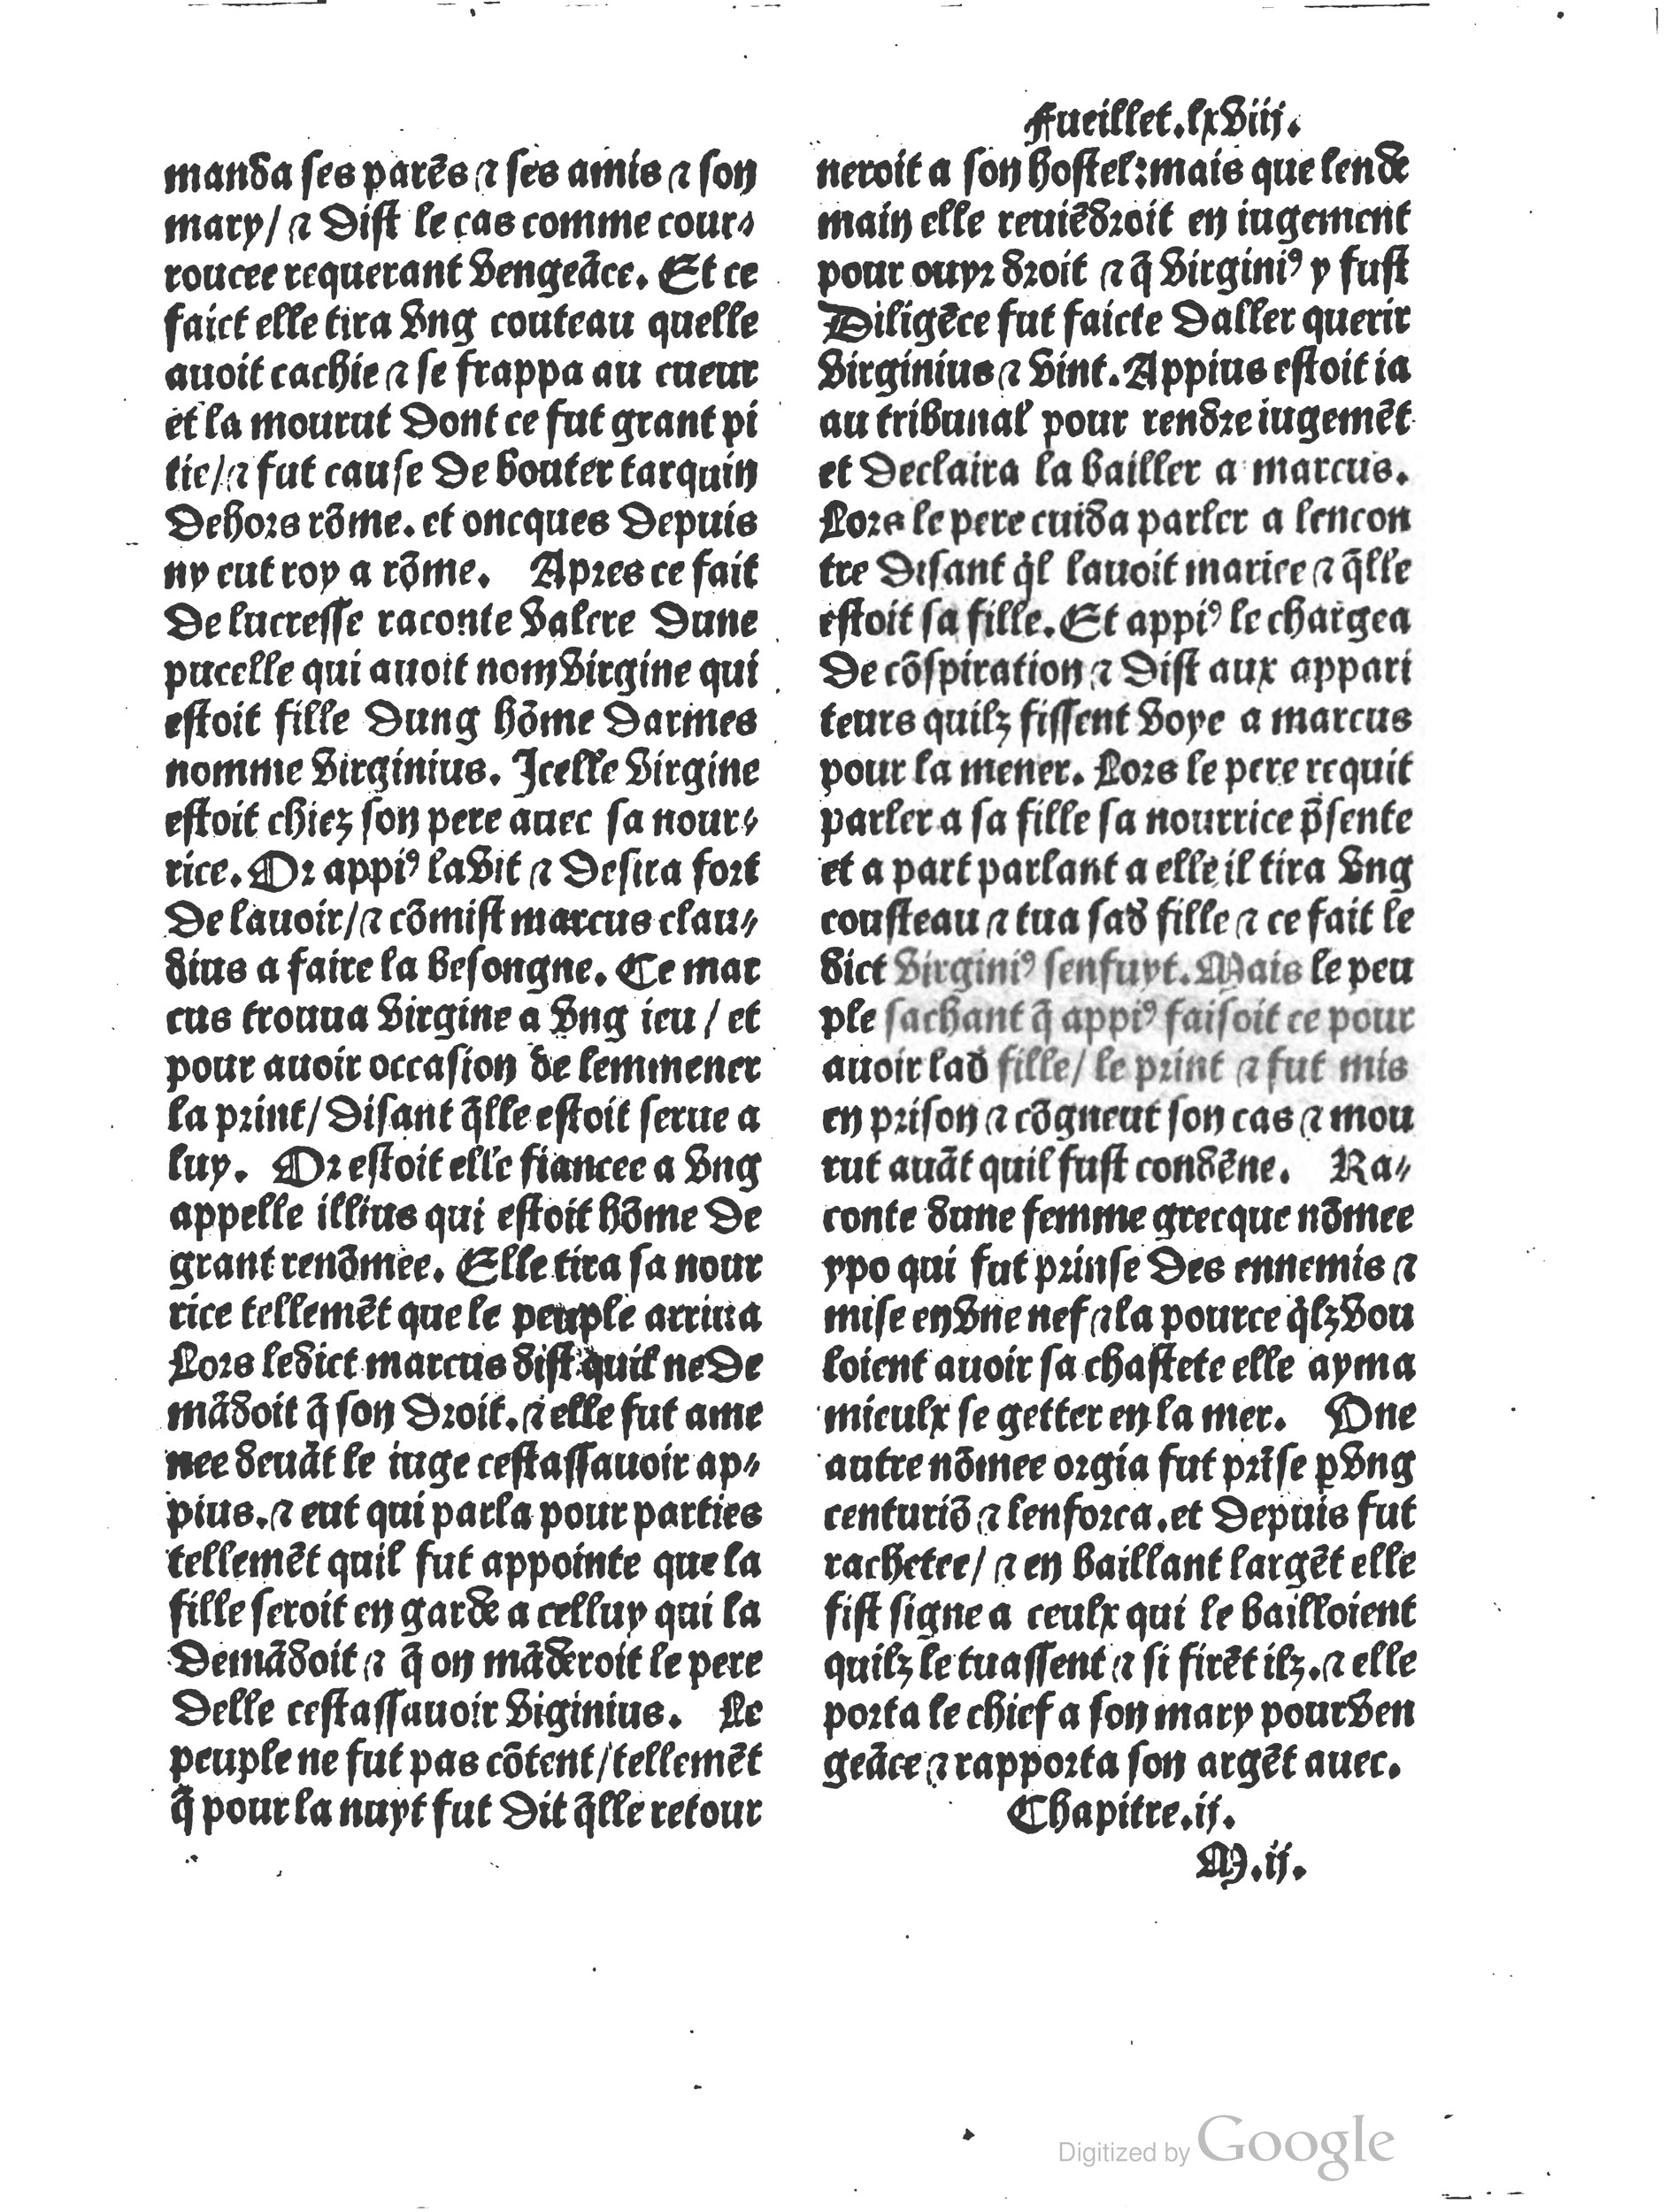 1497 Trésor de noblesse Vérard_BM Lyon_Page_149.jpg